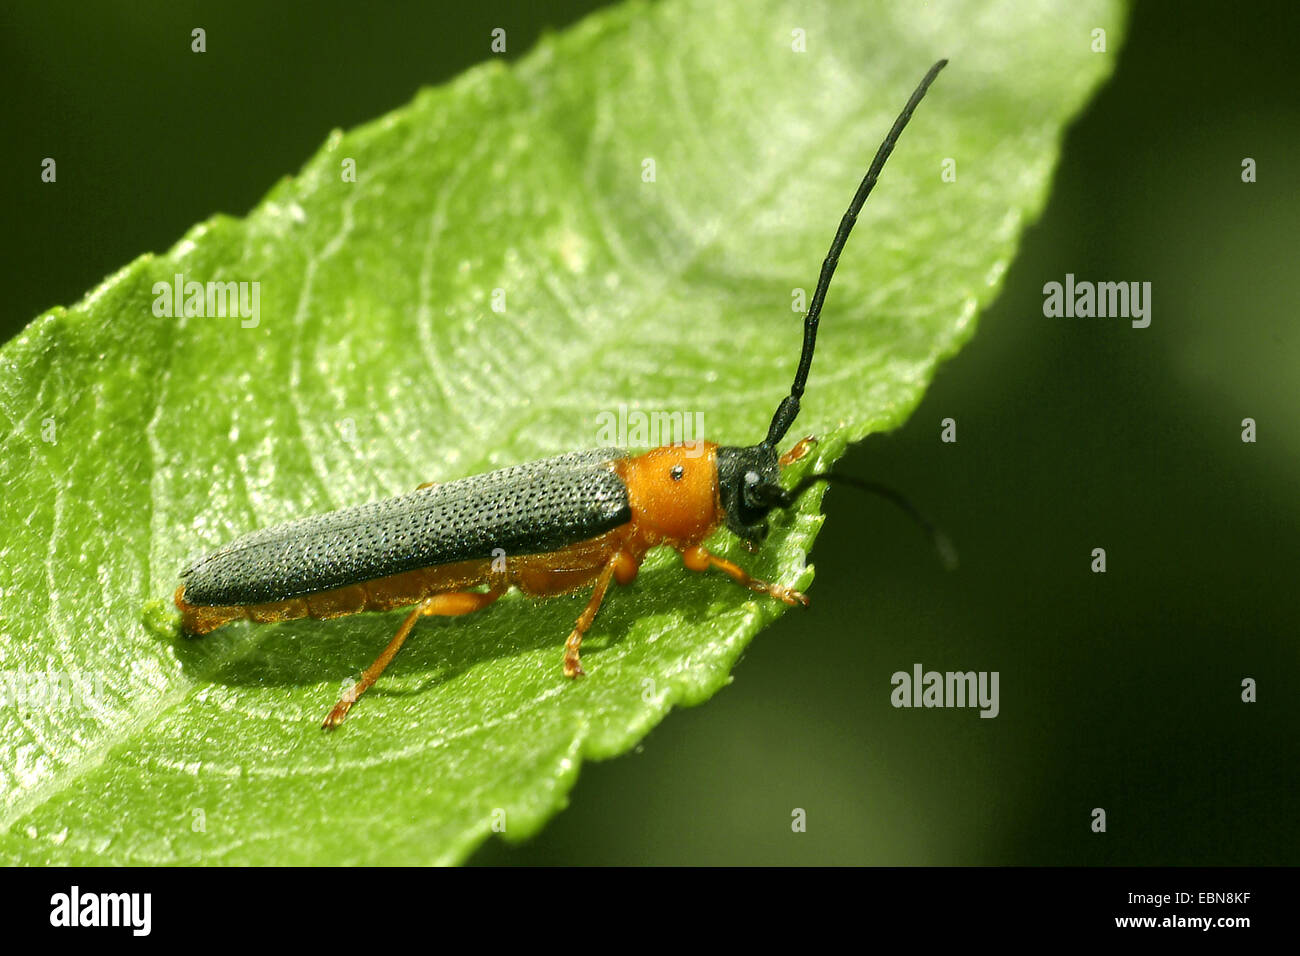 Twin spot longhorn beetle (Oberea oculata), su una foglia, Germania, Hesse Foto Stock